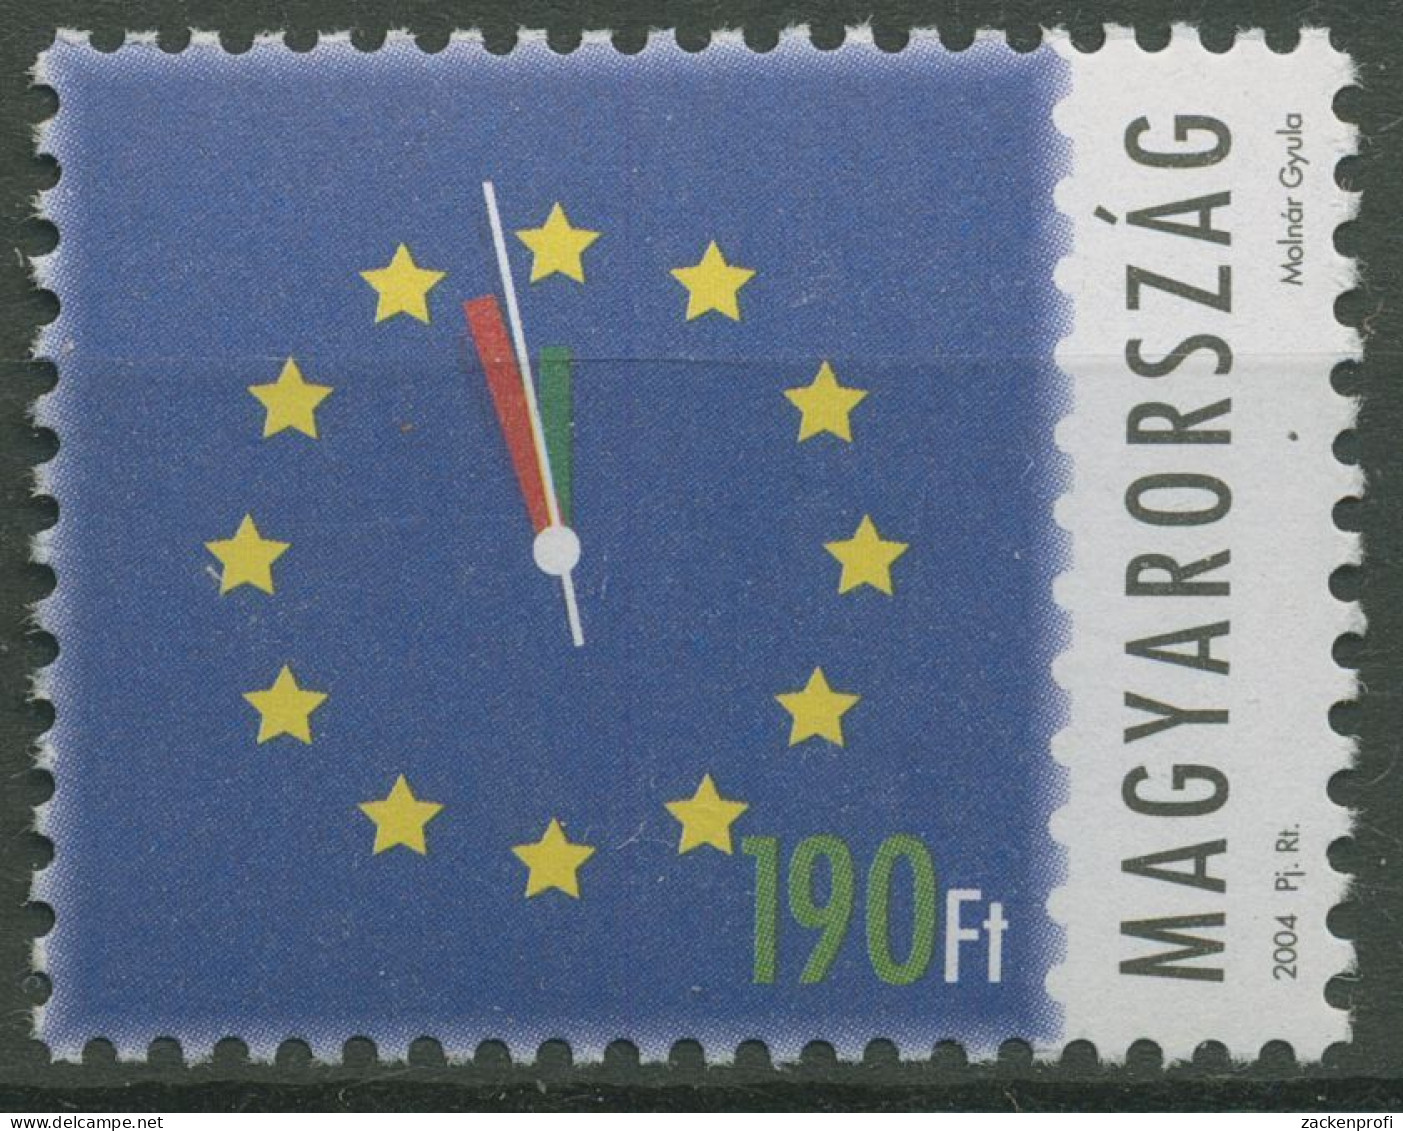 Ungarn 2004 Aufnahme In Die Europäische Union Ziffernblatt 4844 Postfrisch - Ongebruikt